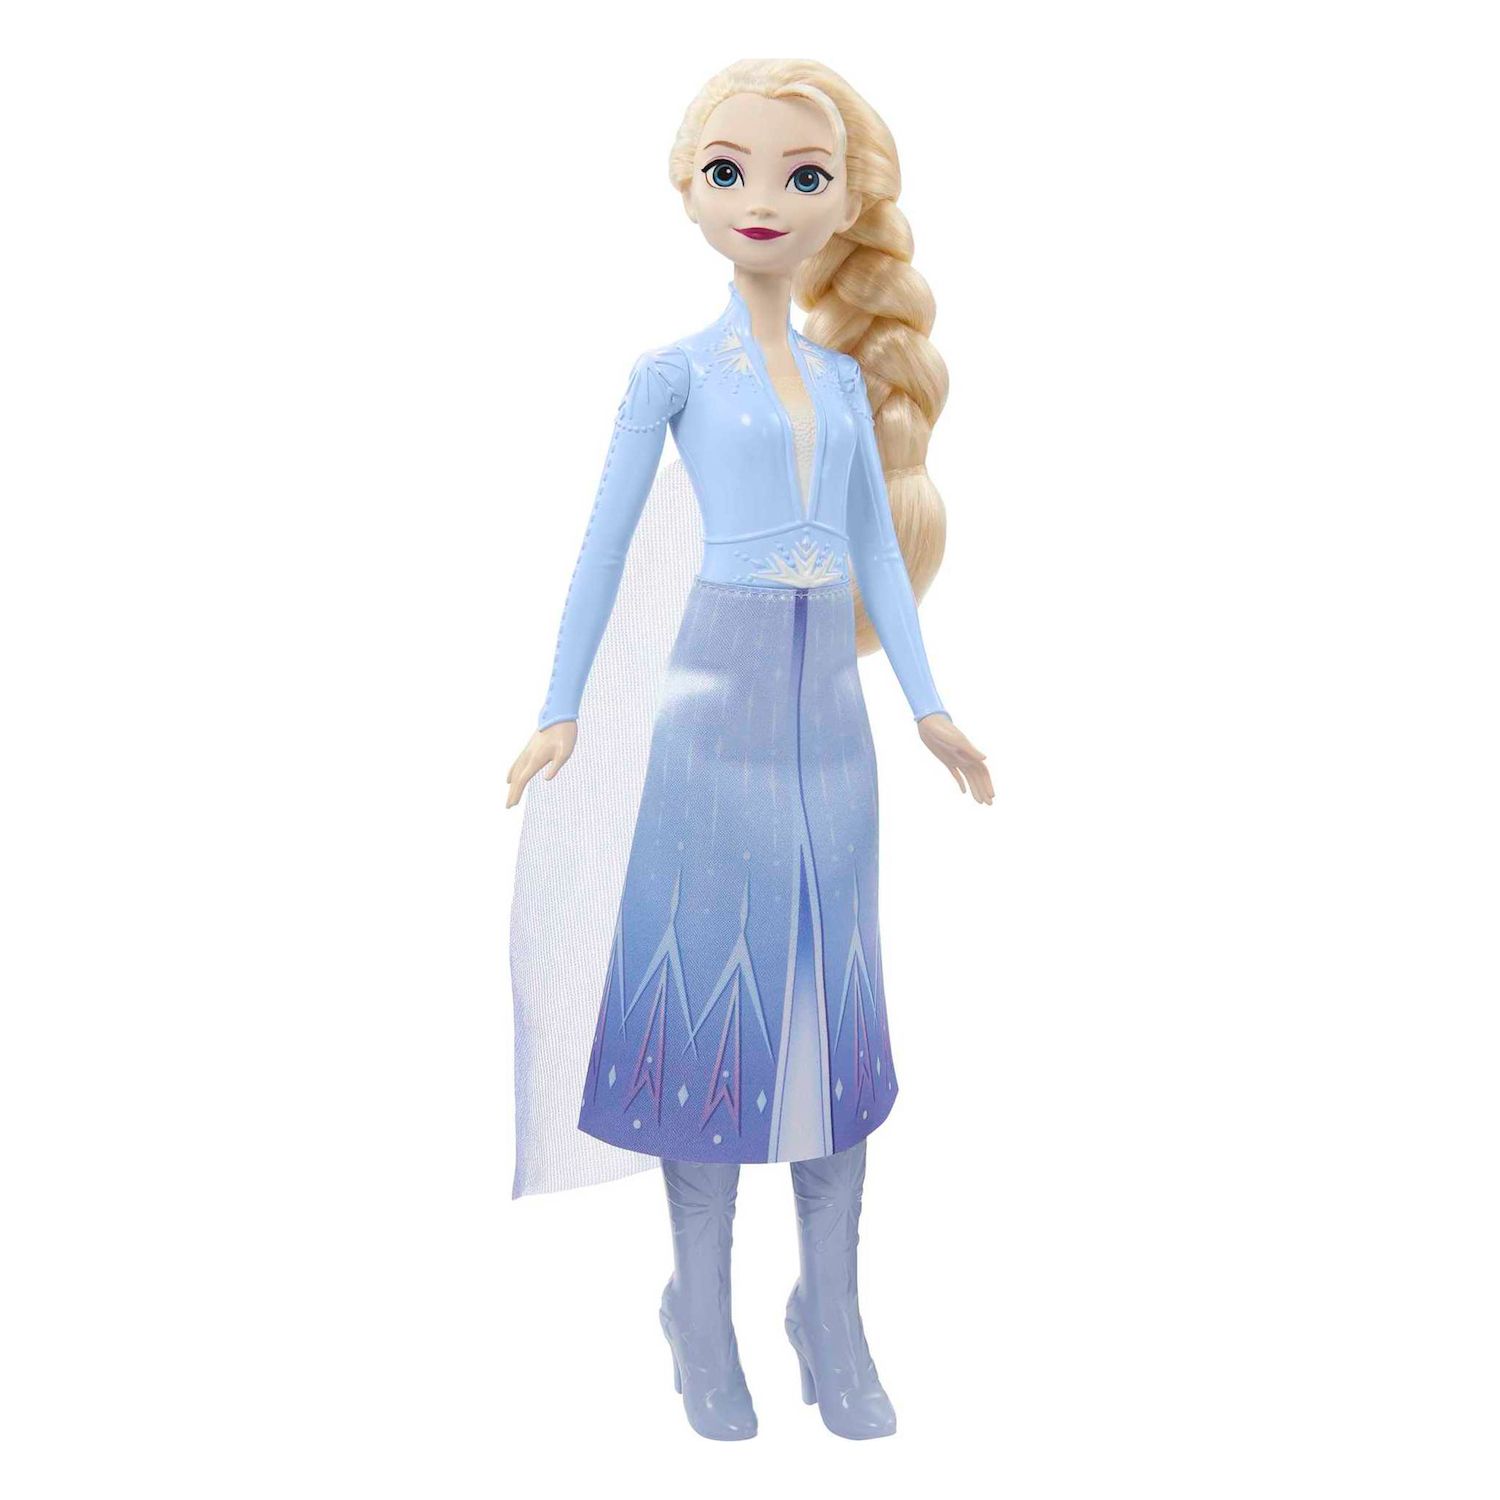 Модная кукла Эльза из мультфильма «Холодное сердце 2» от Mattel Mattel